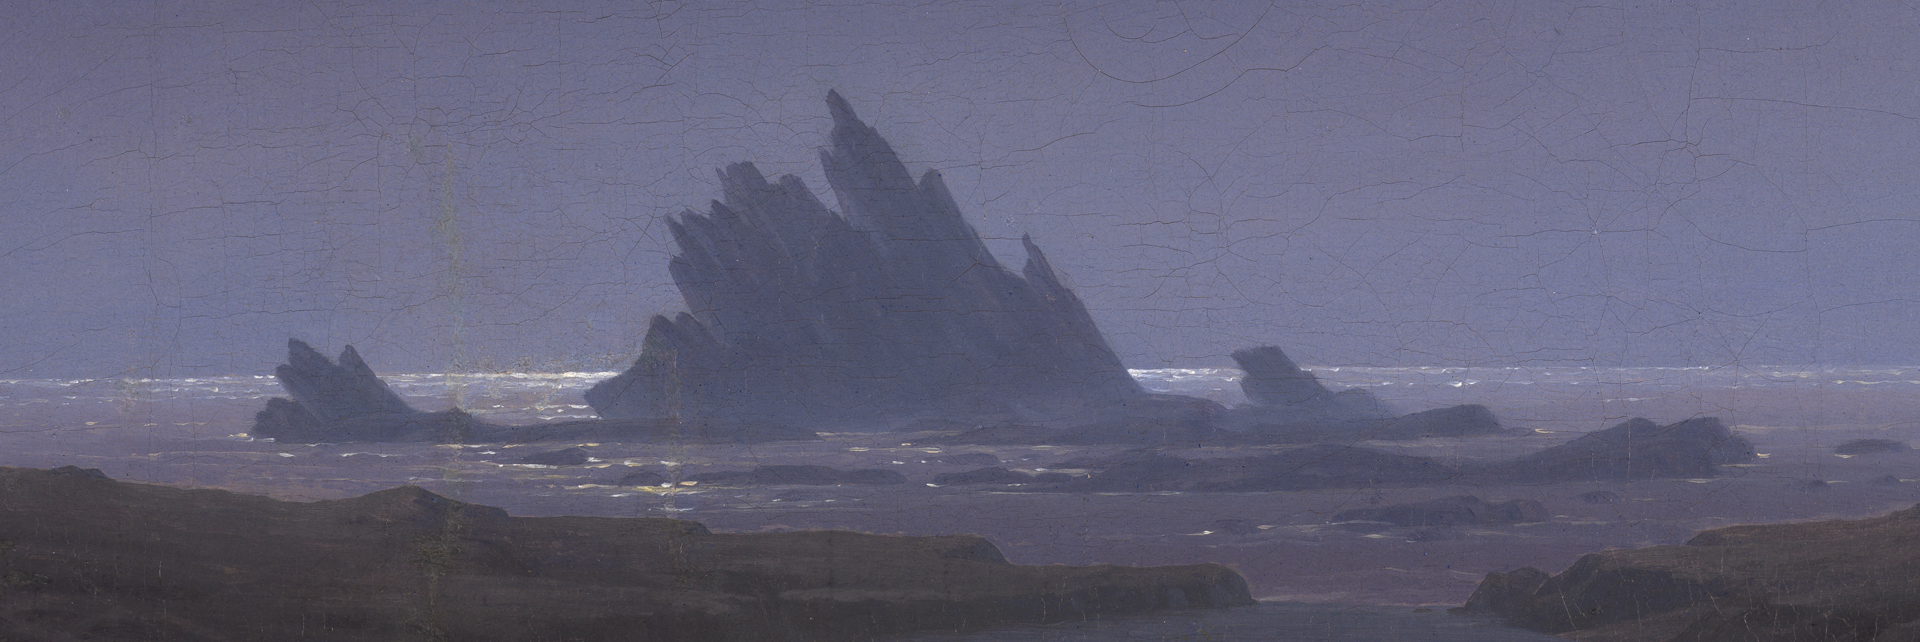 Detail aus Caspar David Friedrichs Felsenriff am Meeresstrand. Ein schroffer Felsen ragt aus dem vom Mondlicht beschienenen Meer hervor.